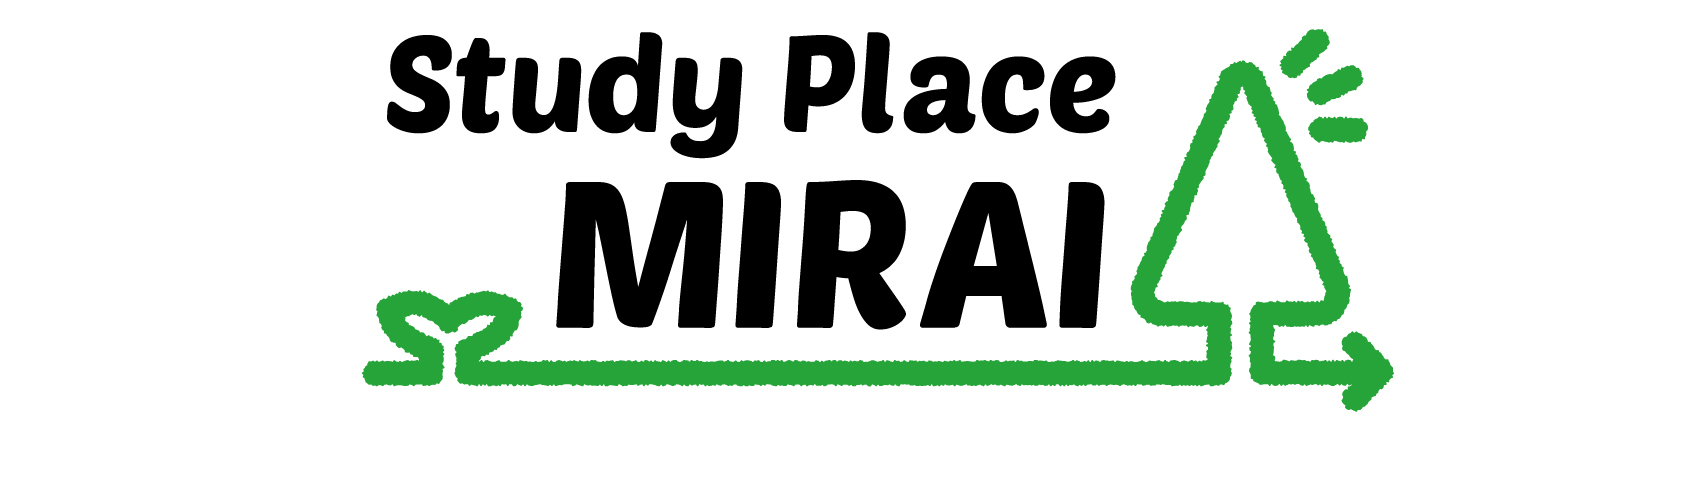 Study Place MIRAI